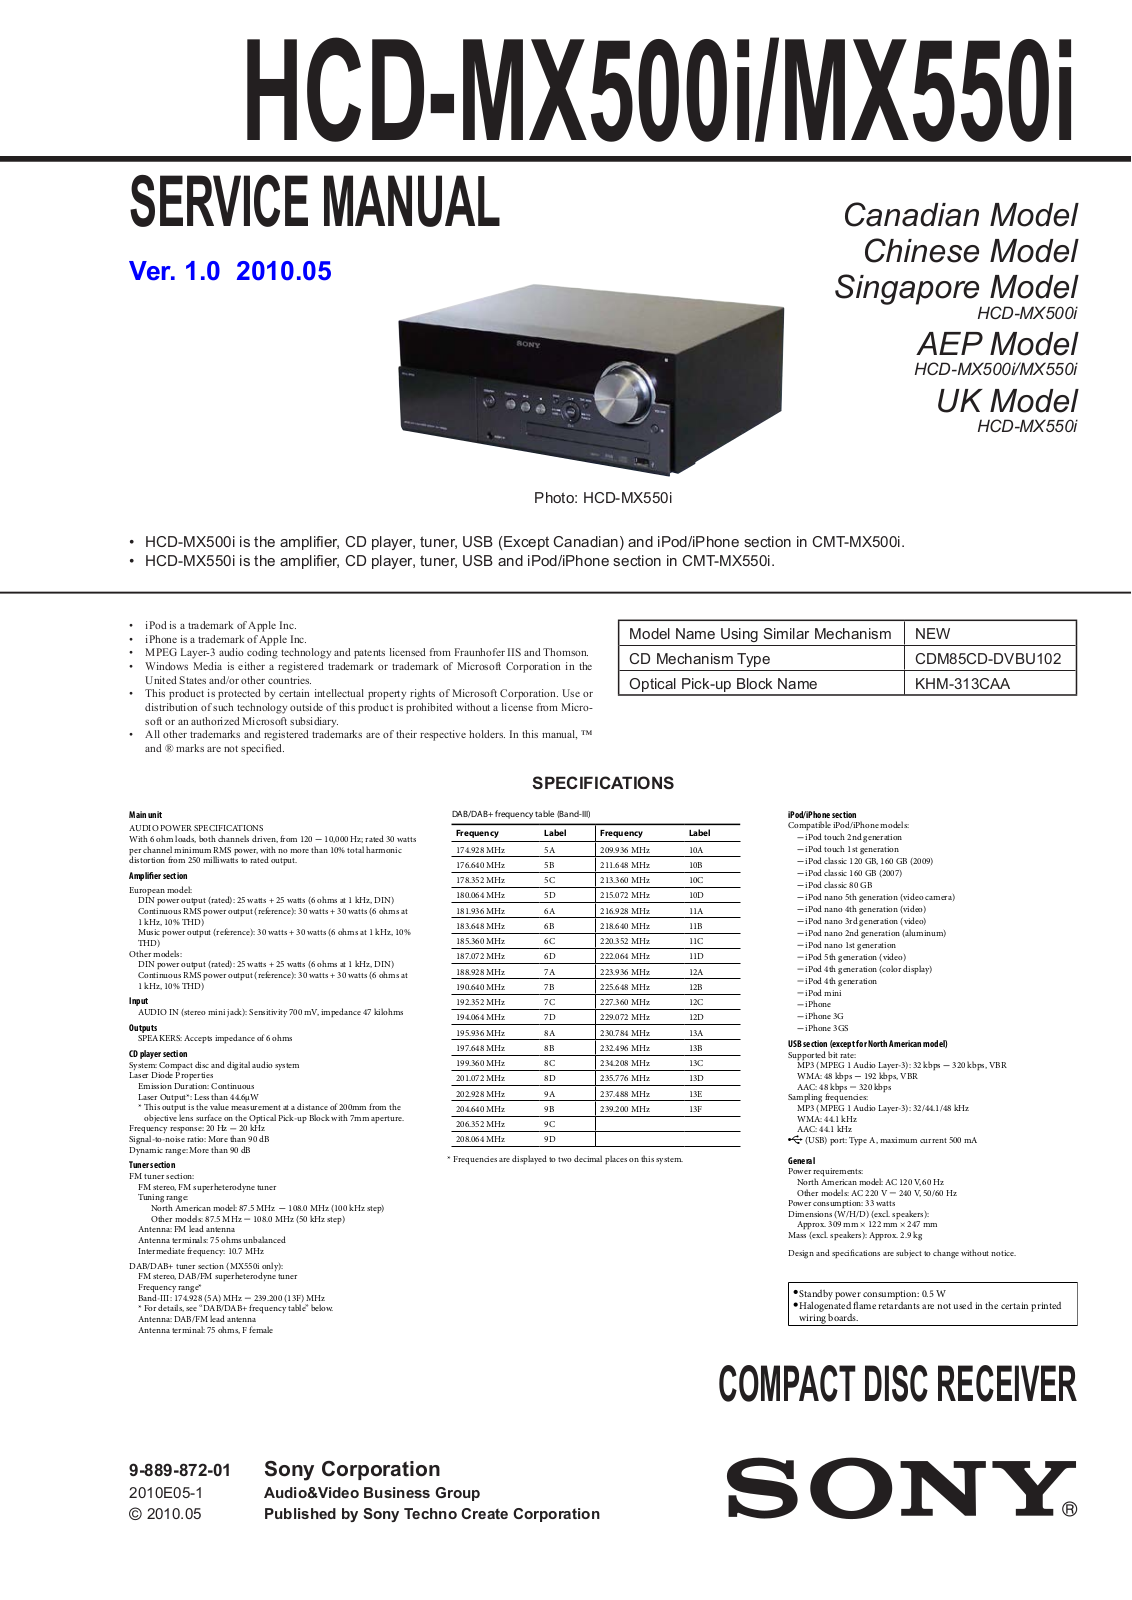 Sony HCD-MX500i, HCD-MX550i Service Manual